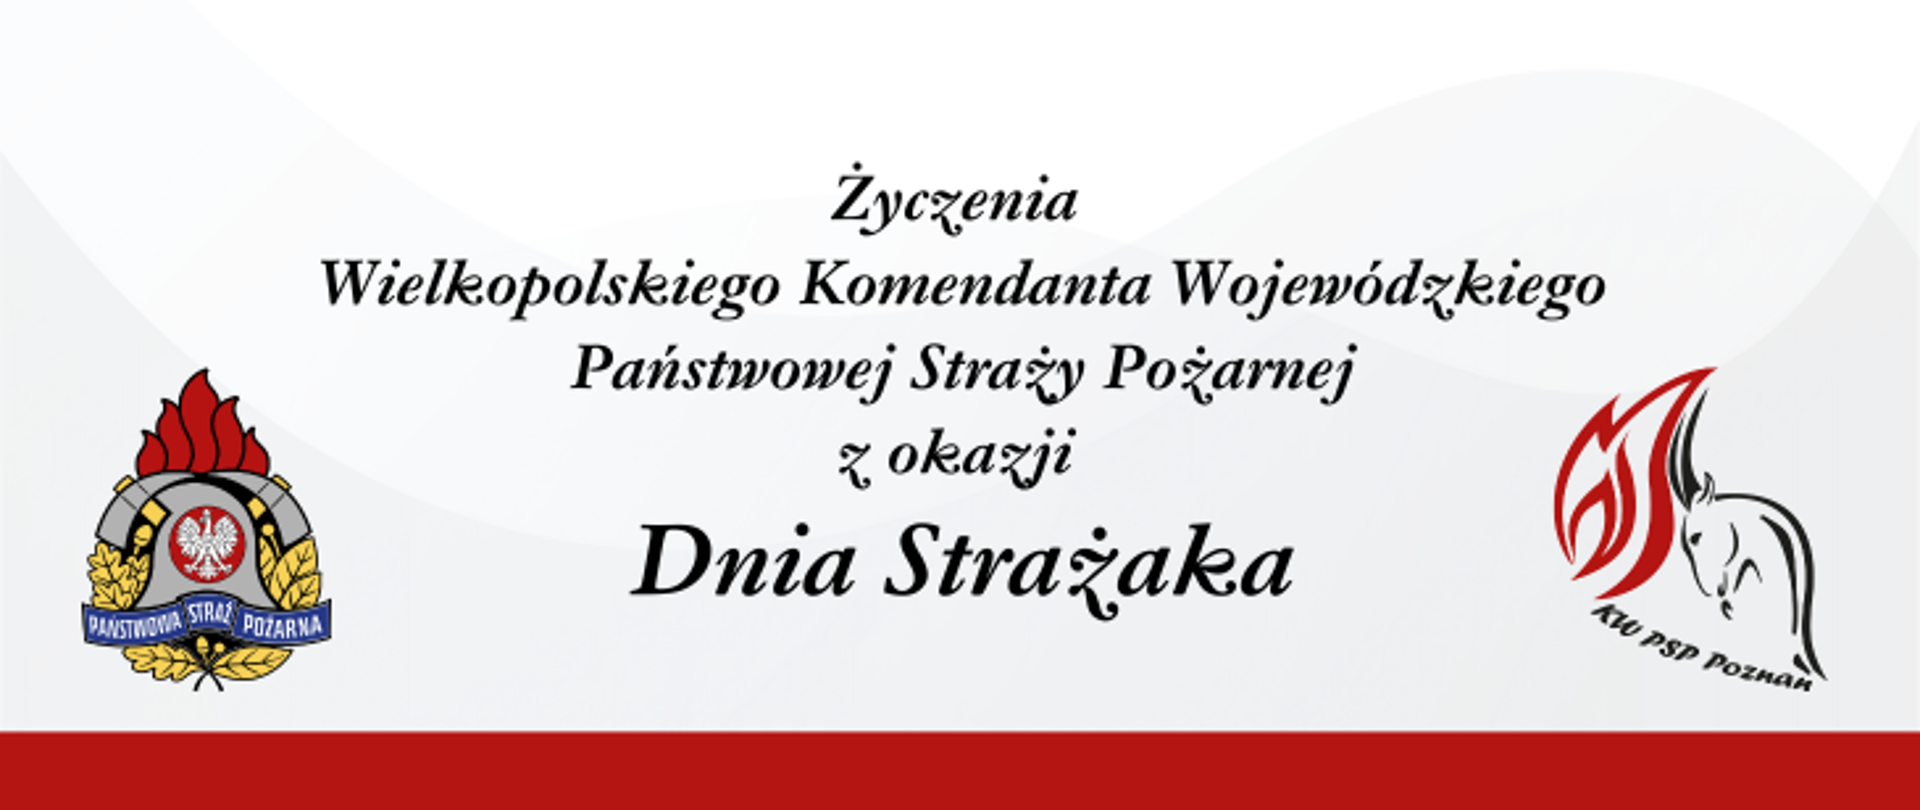 Życzenia Wielkopolskiego Komendanta Wojewódzkiego PSP z okazji Dnia Strażaka